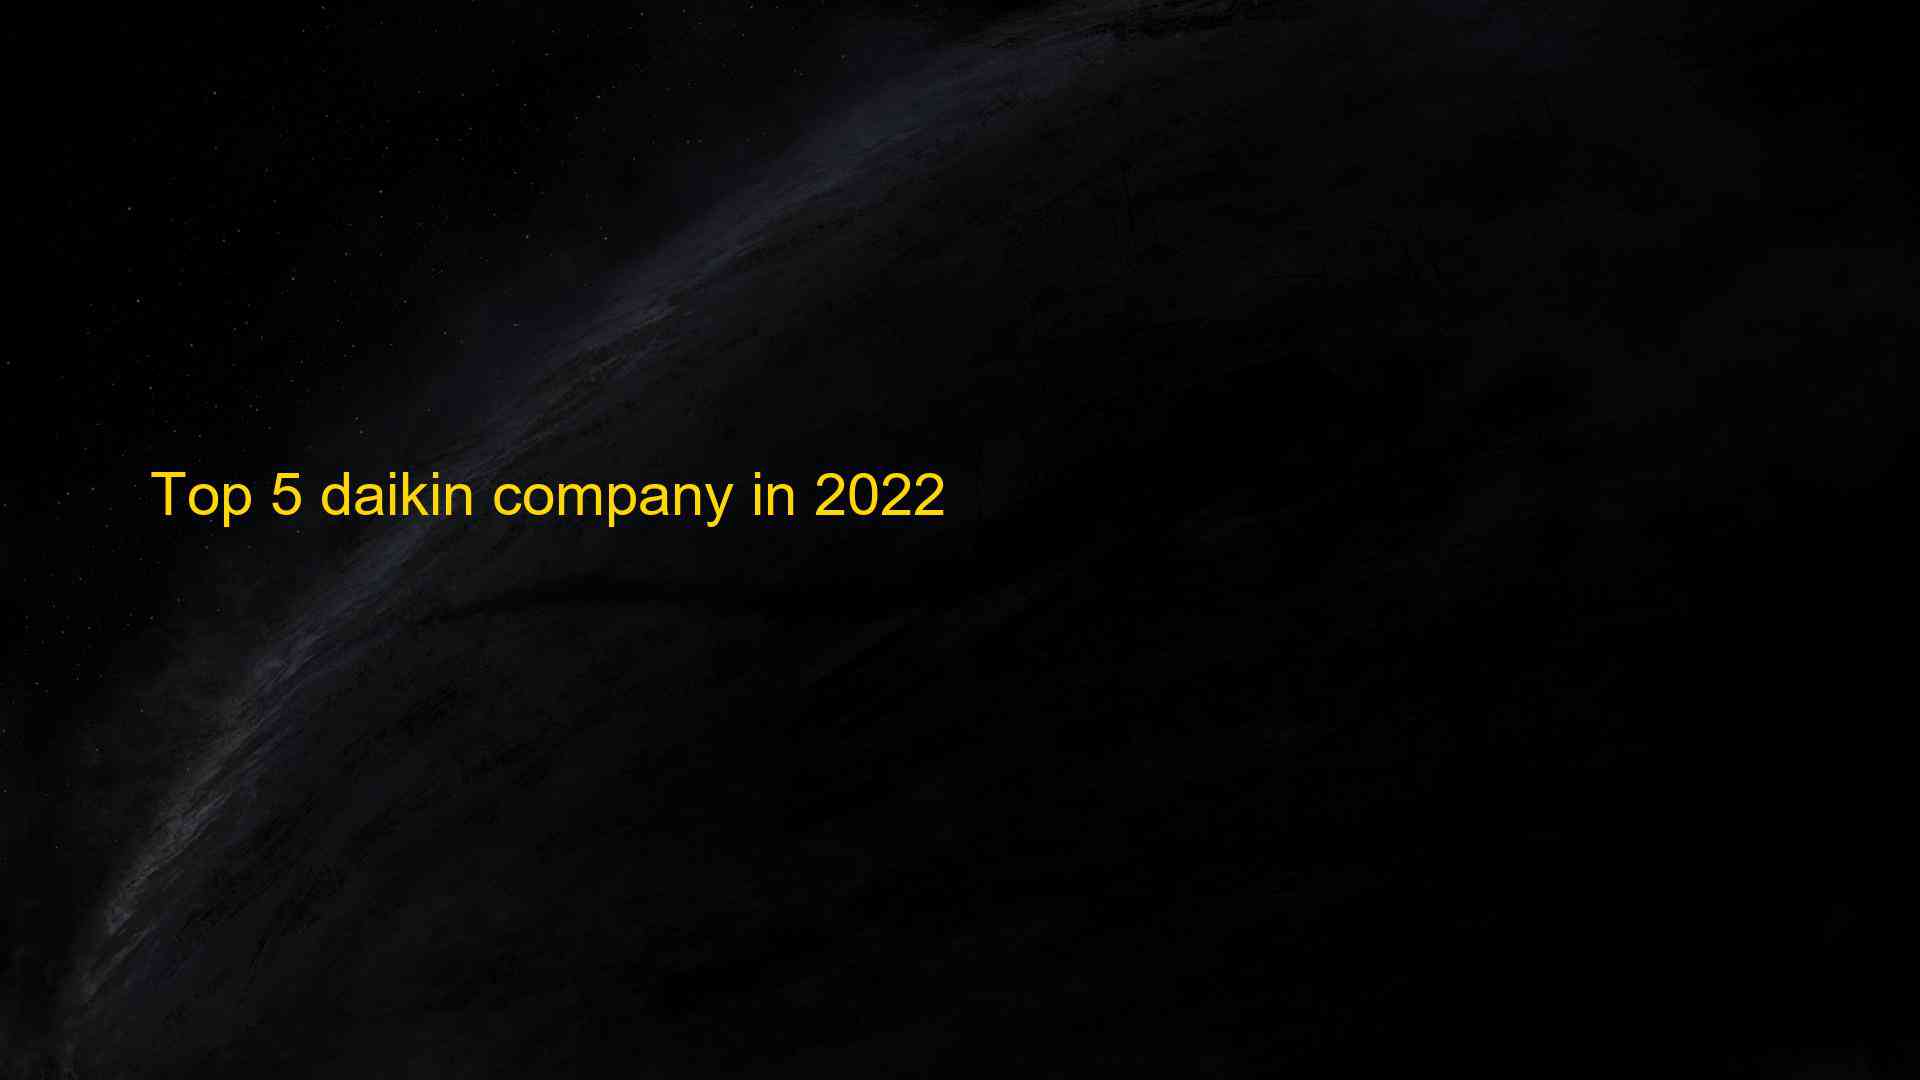 Top 5 daikin company in 2022 1660105708